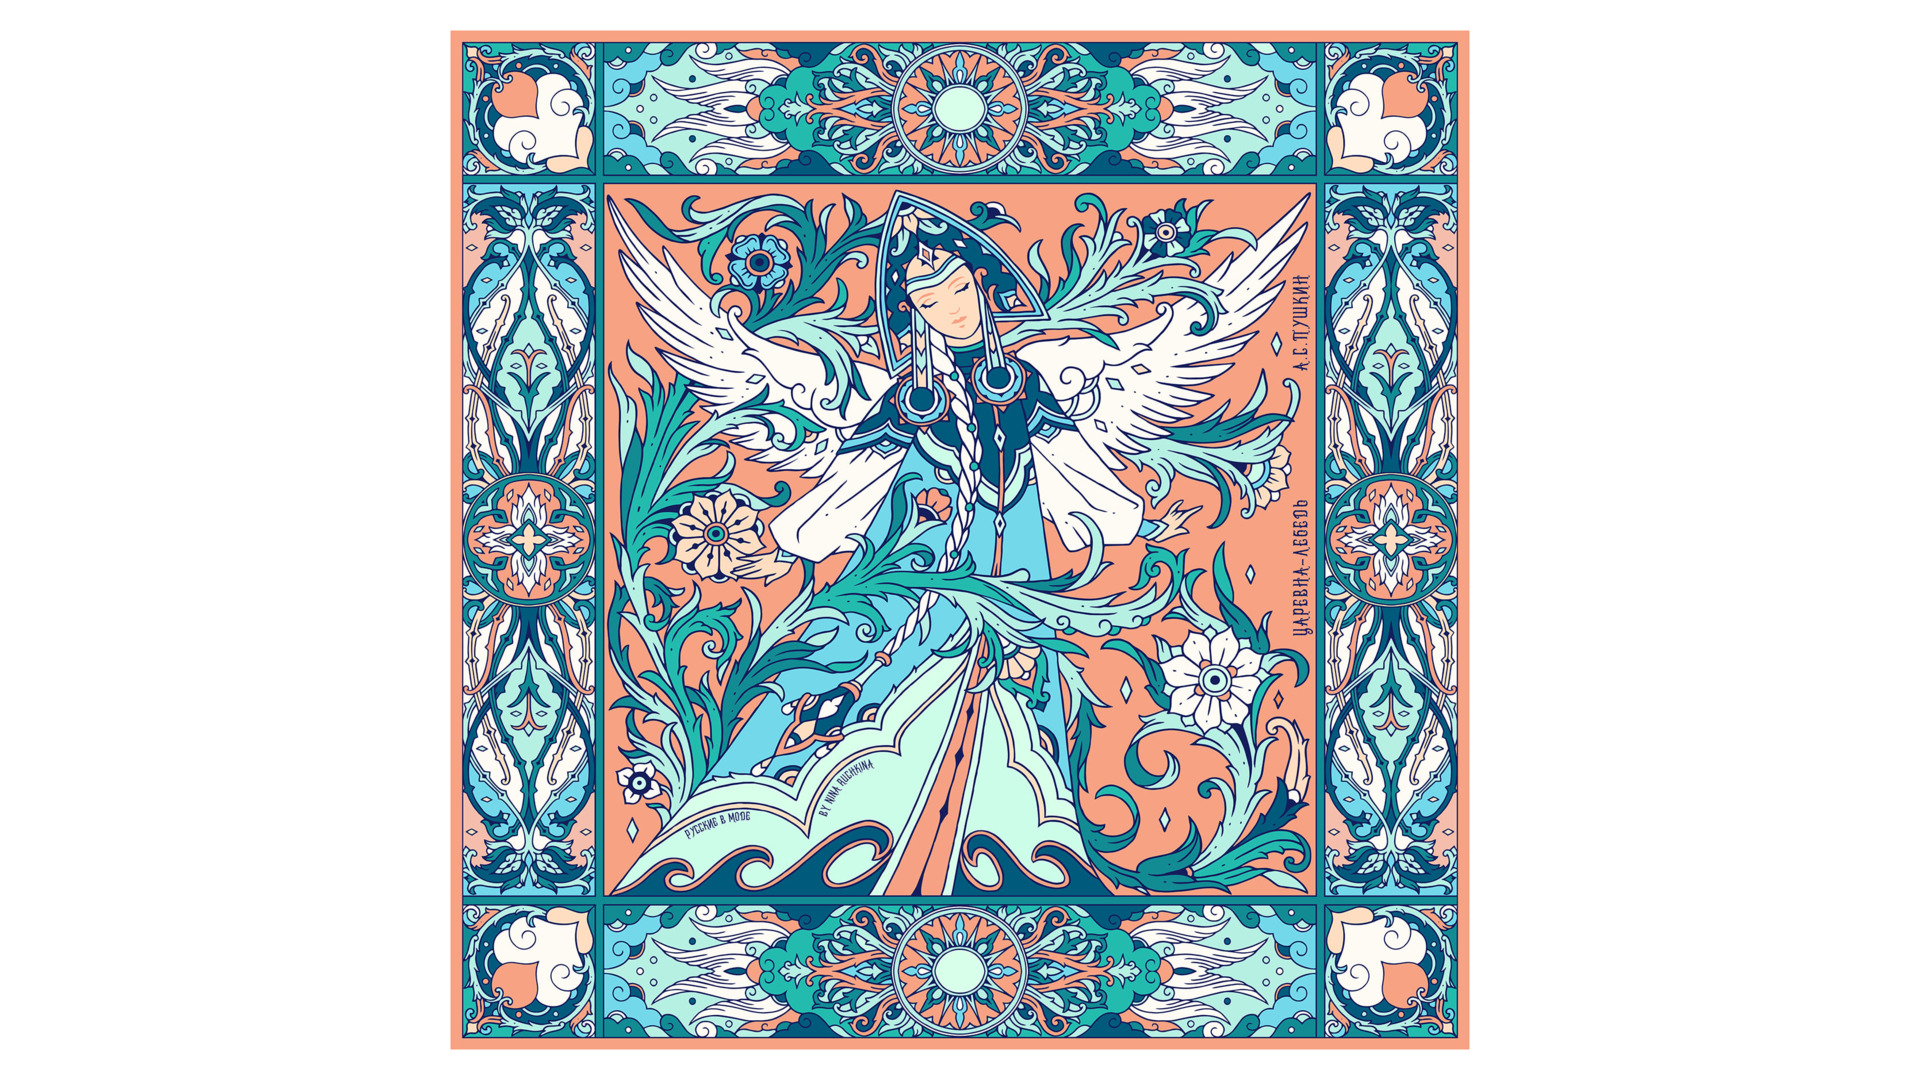 Платок сувенирный Русские в моде Царевна-лебедь 90х90 см, шелк, вискоза, ручная подшивка